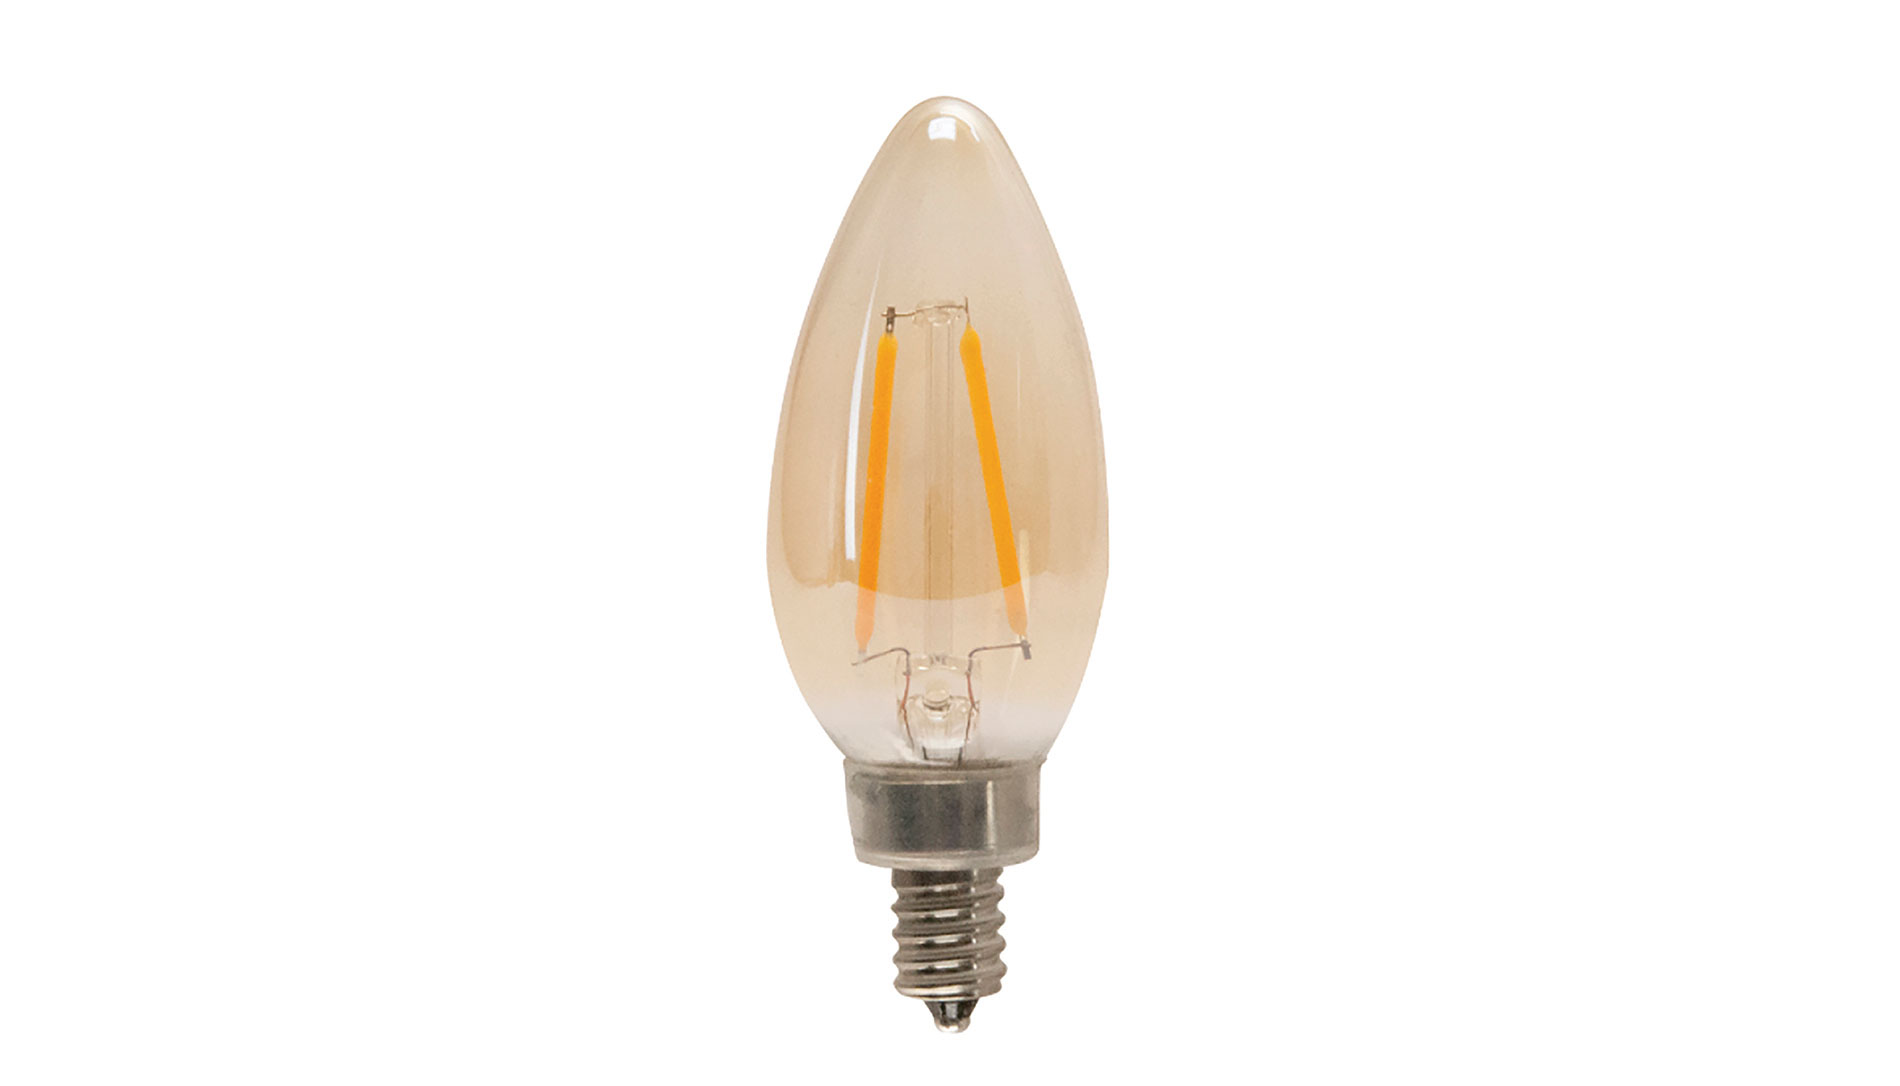 TCP's LED Classic Filament Lamp